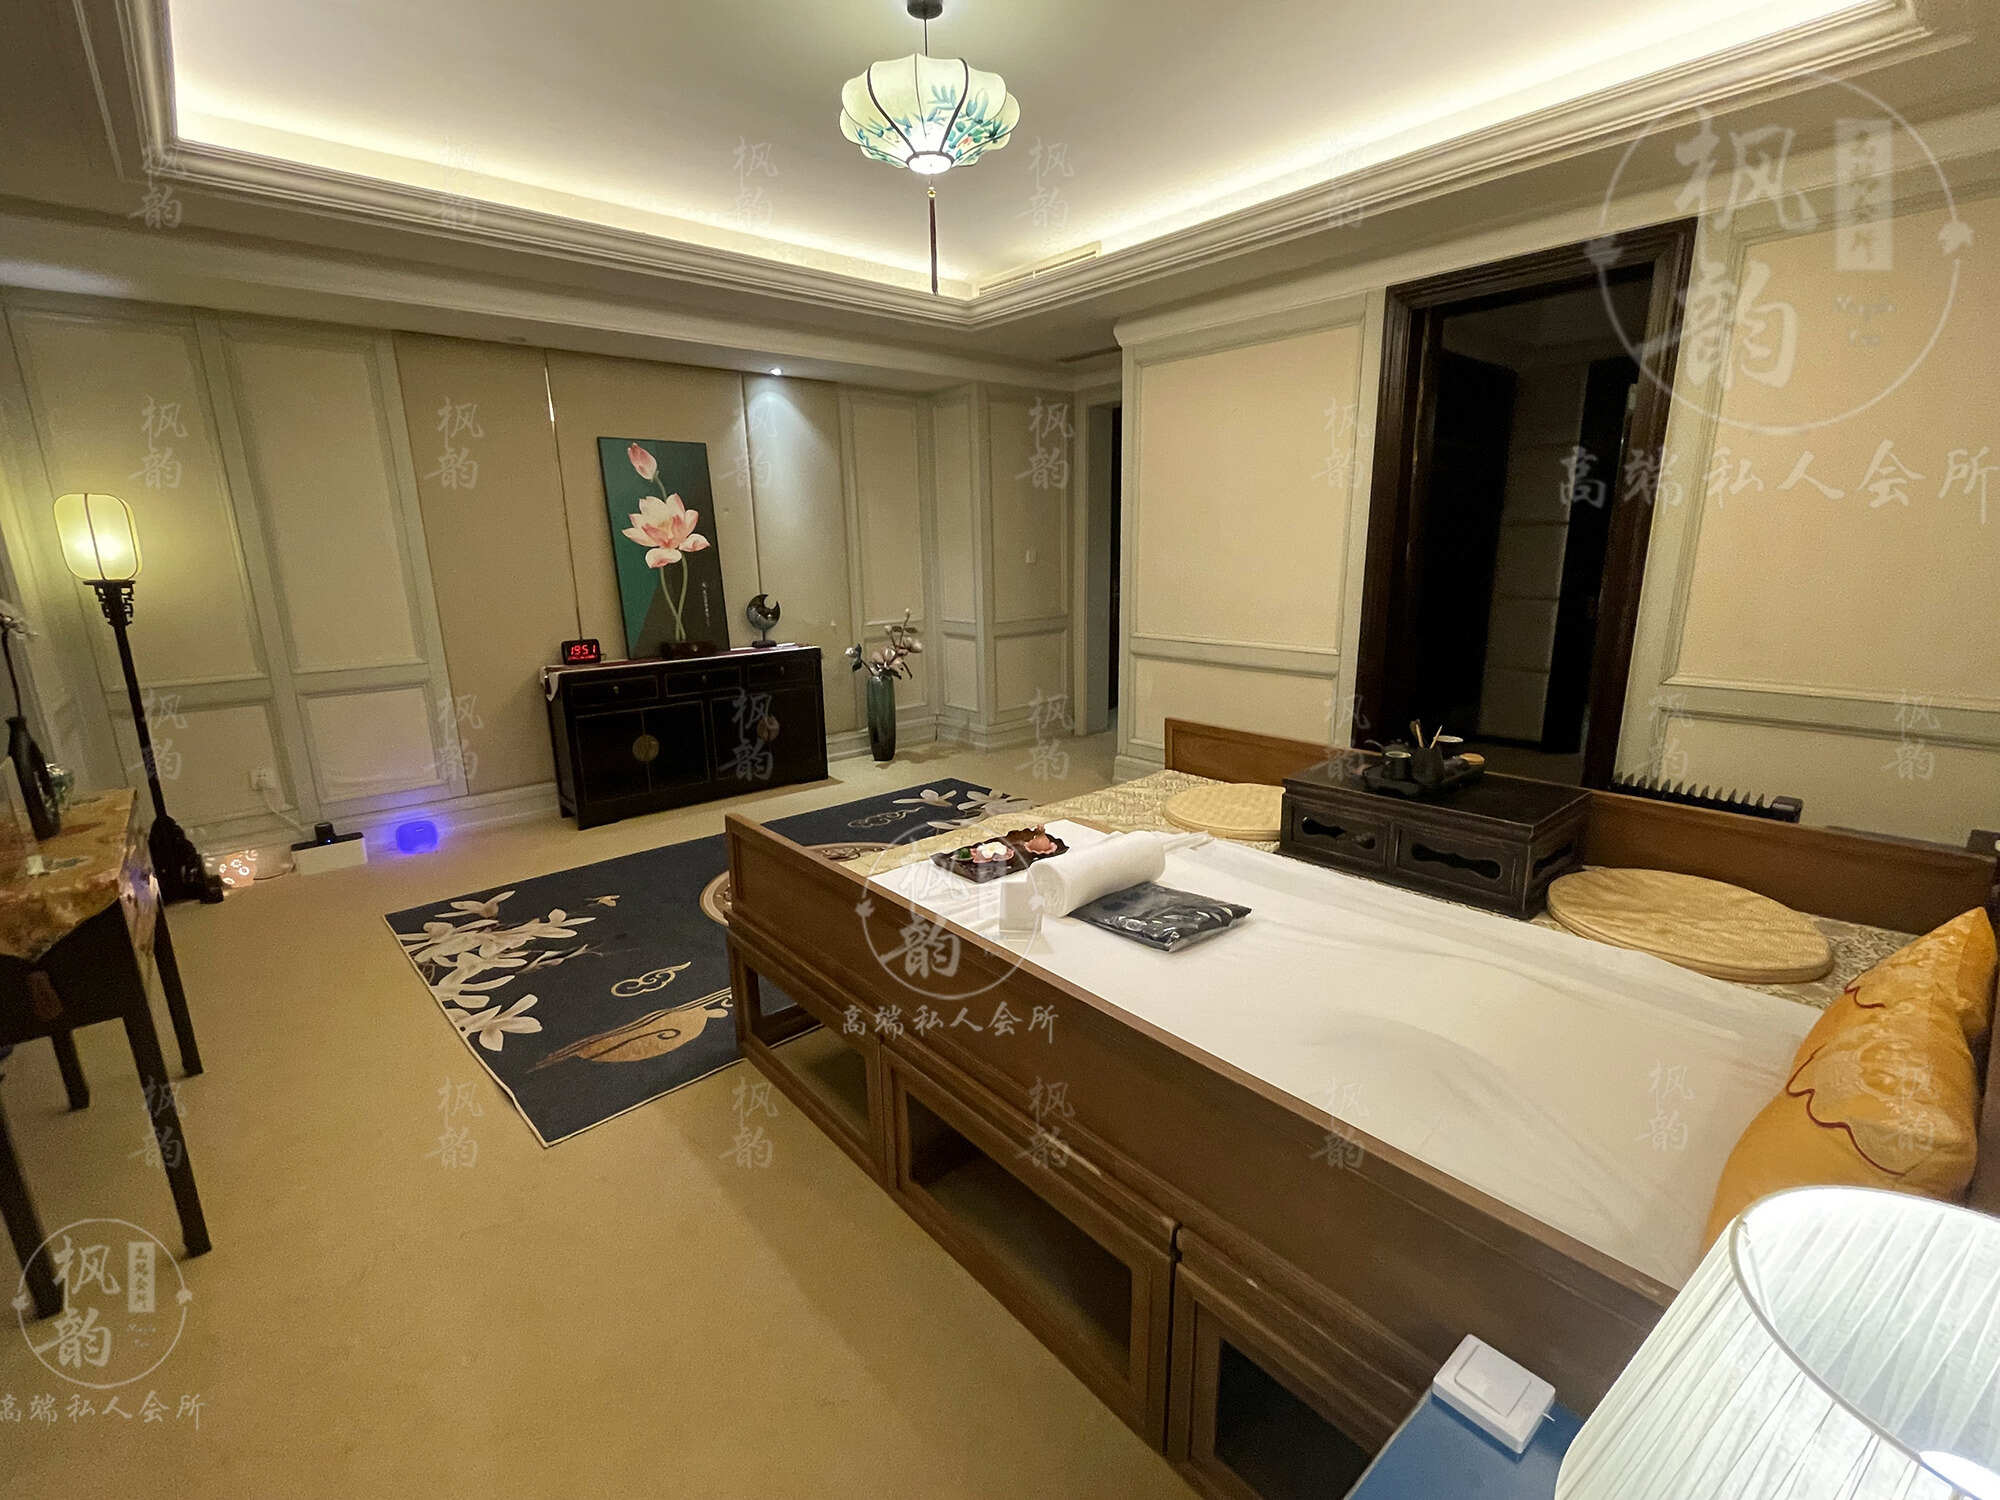 上海天津渔阳鼓楼人气优选沐足会馆房间也很干净，舒适的spa体验